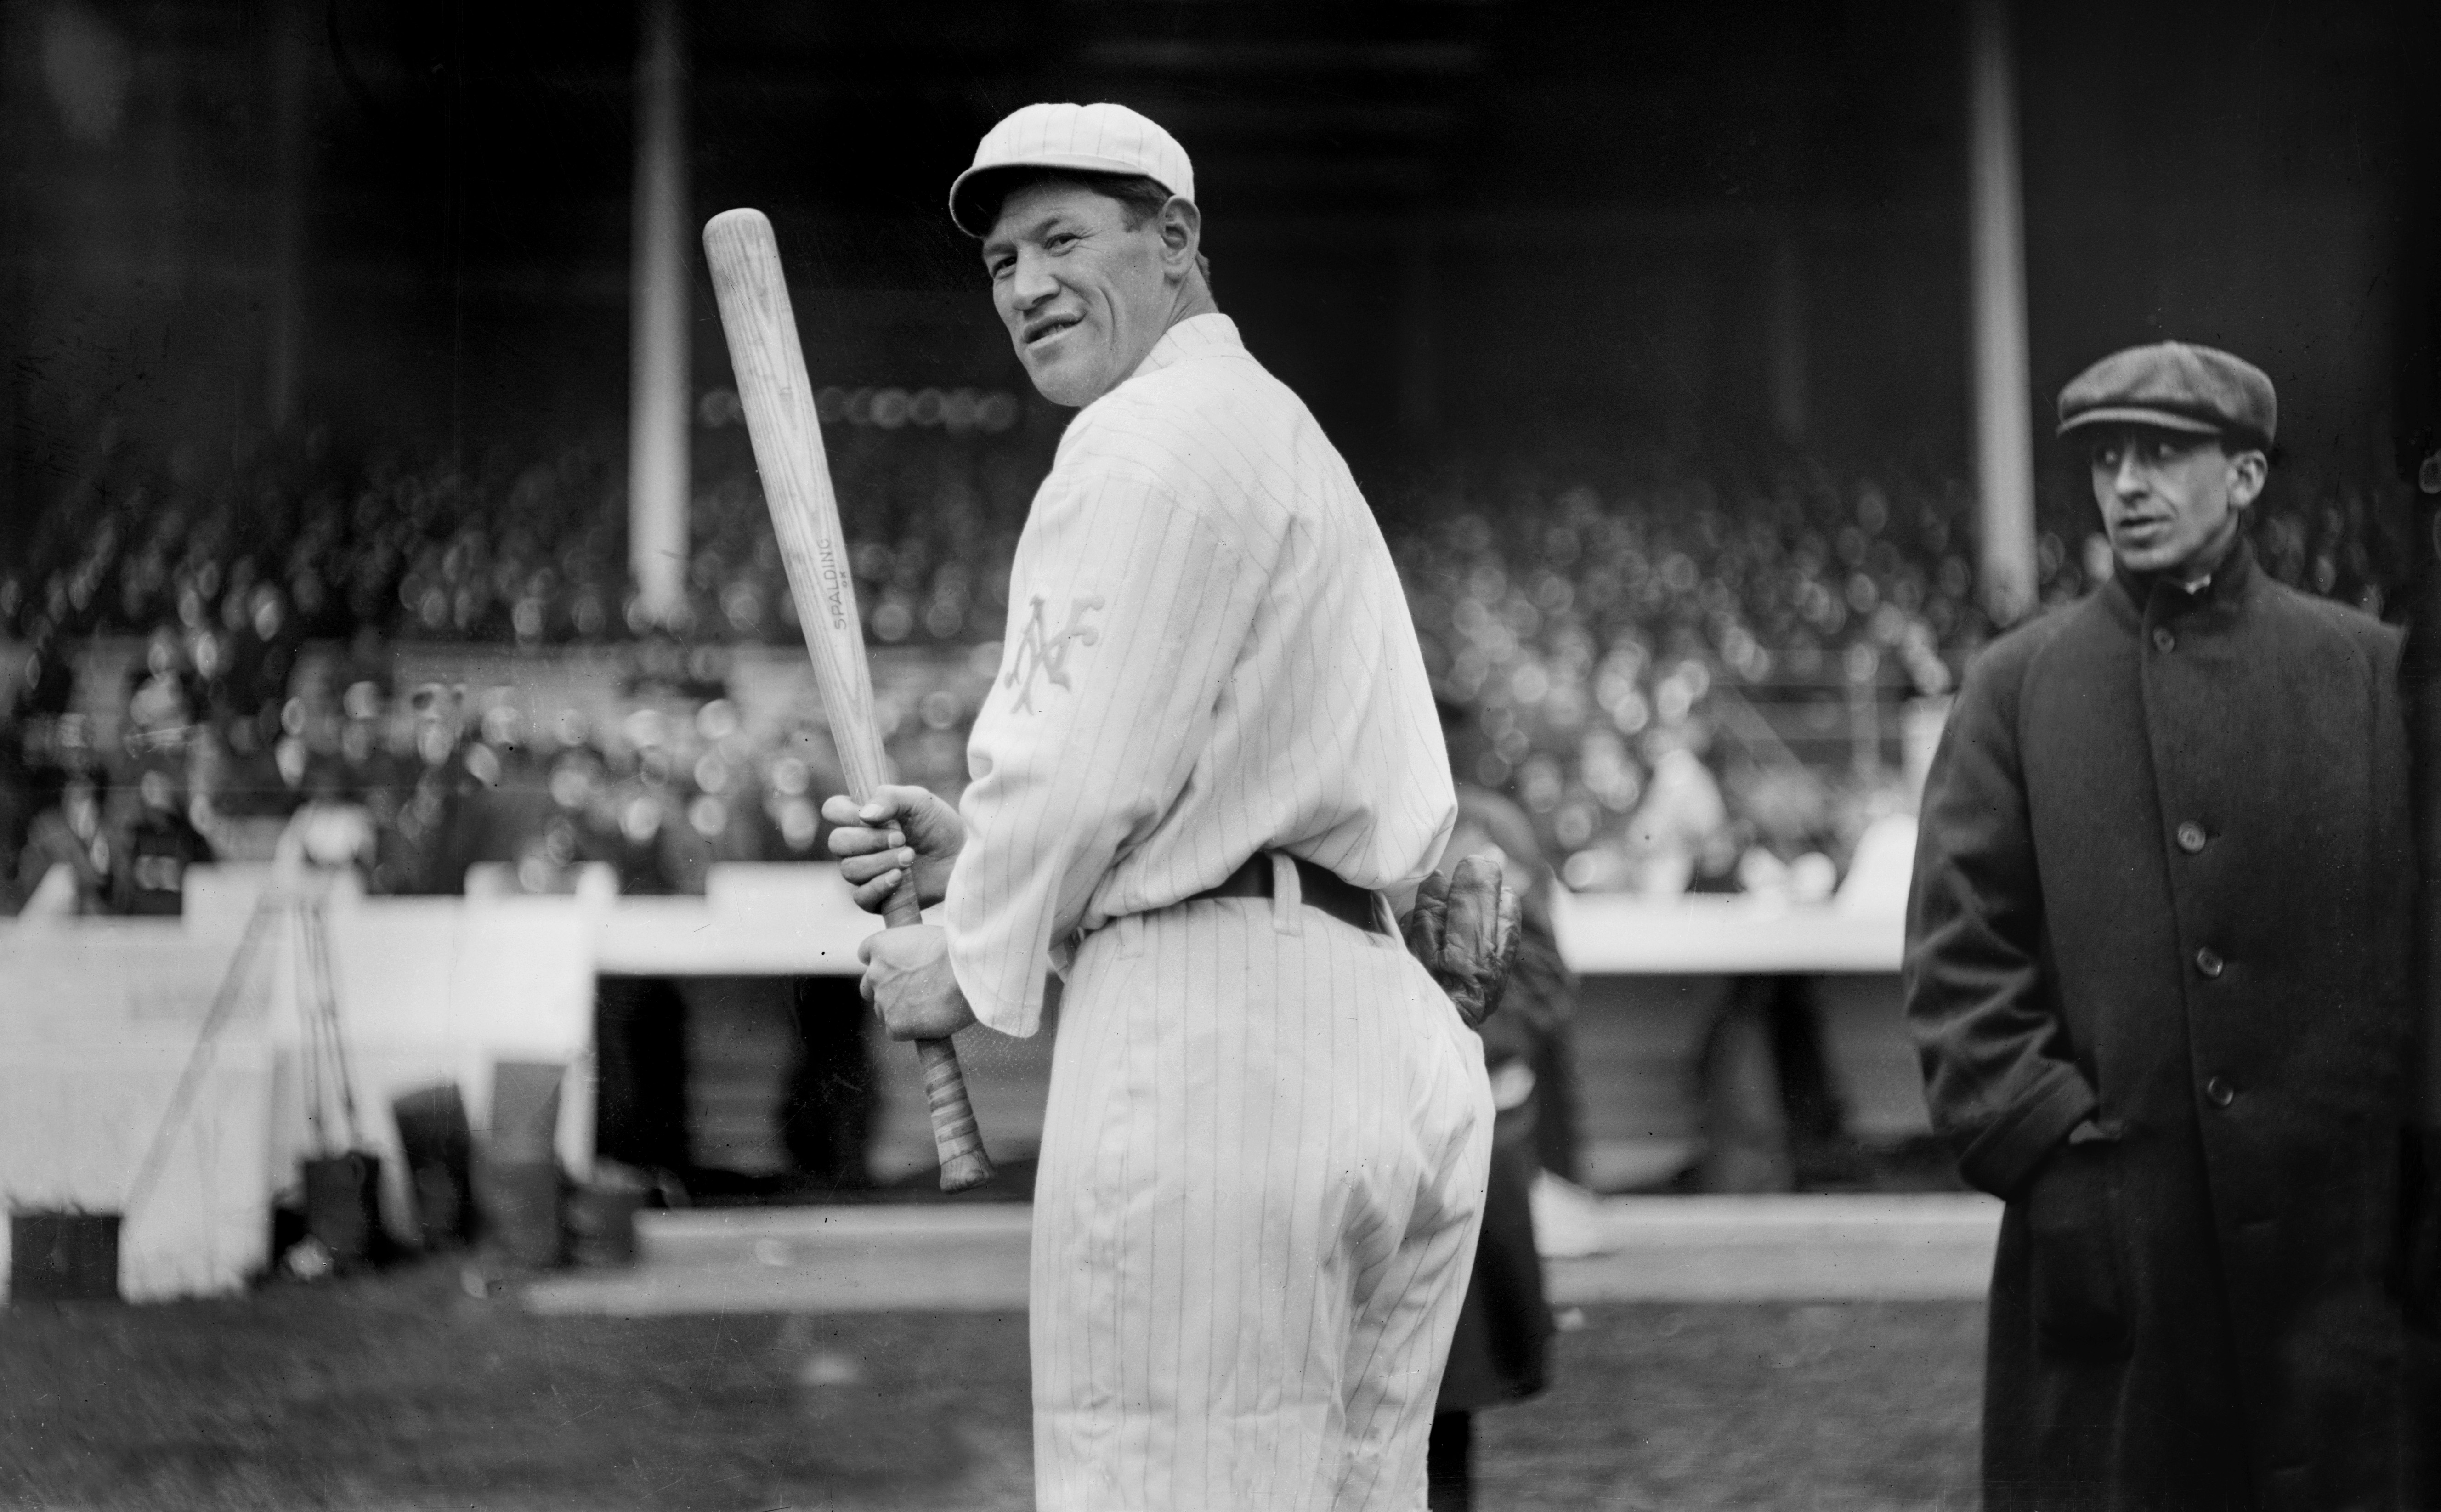 Jim Thorpe, Major League Baseball Player, New York Giants, Polo Grounds, New York City